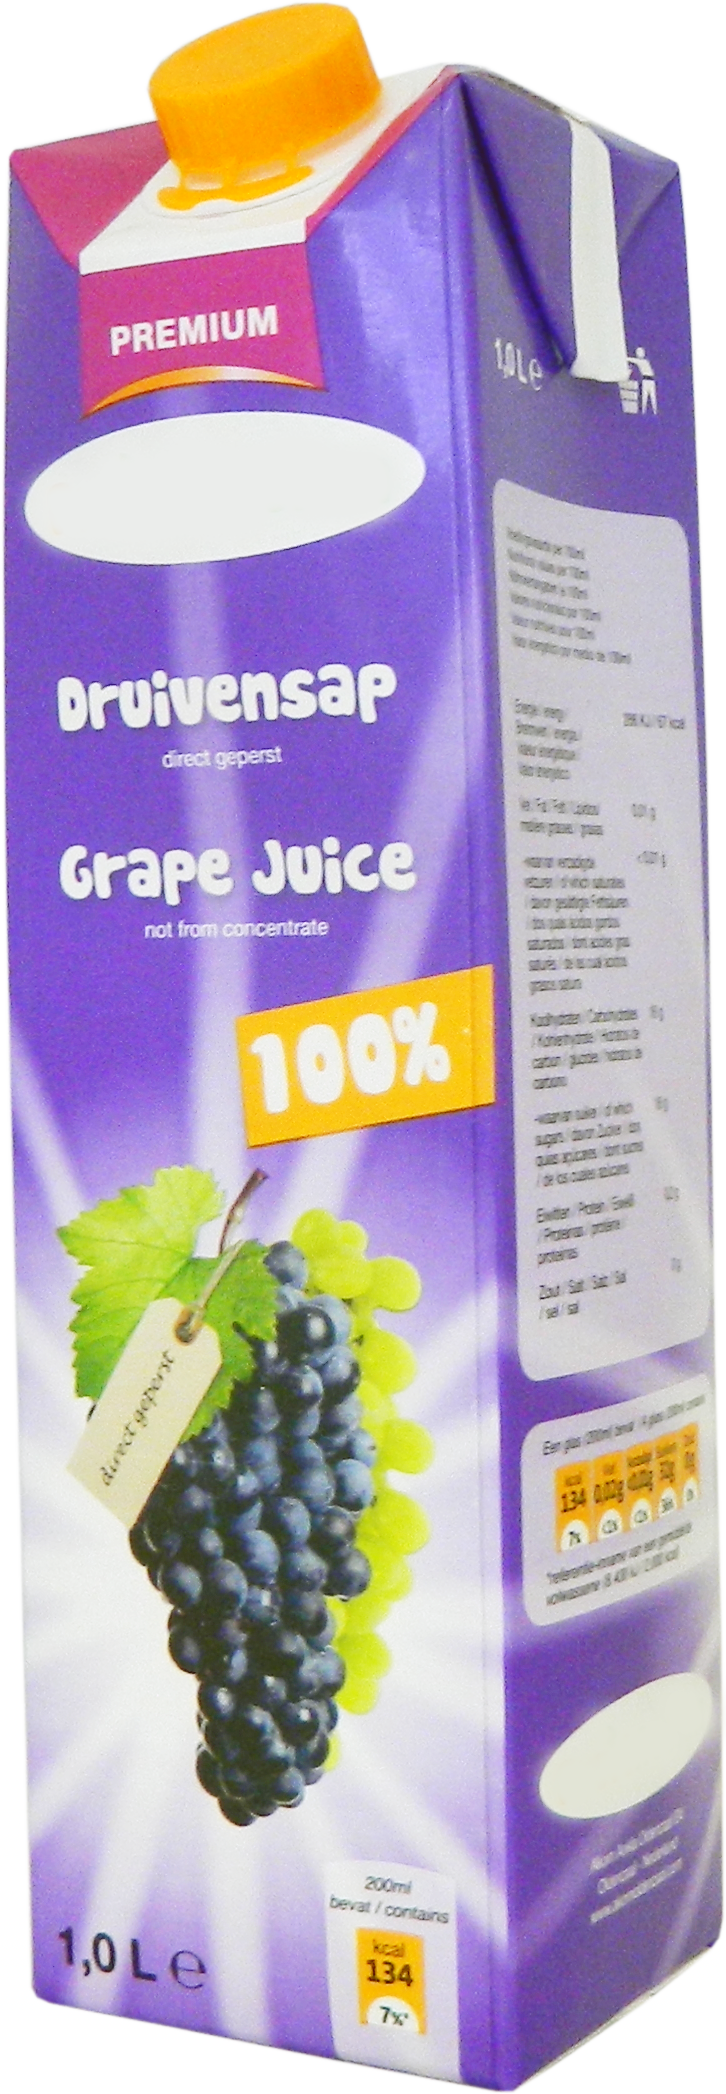 Premium Grape juice 1,0 liter